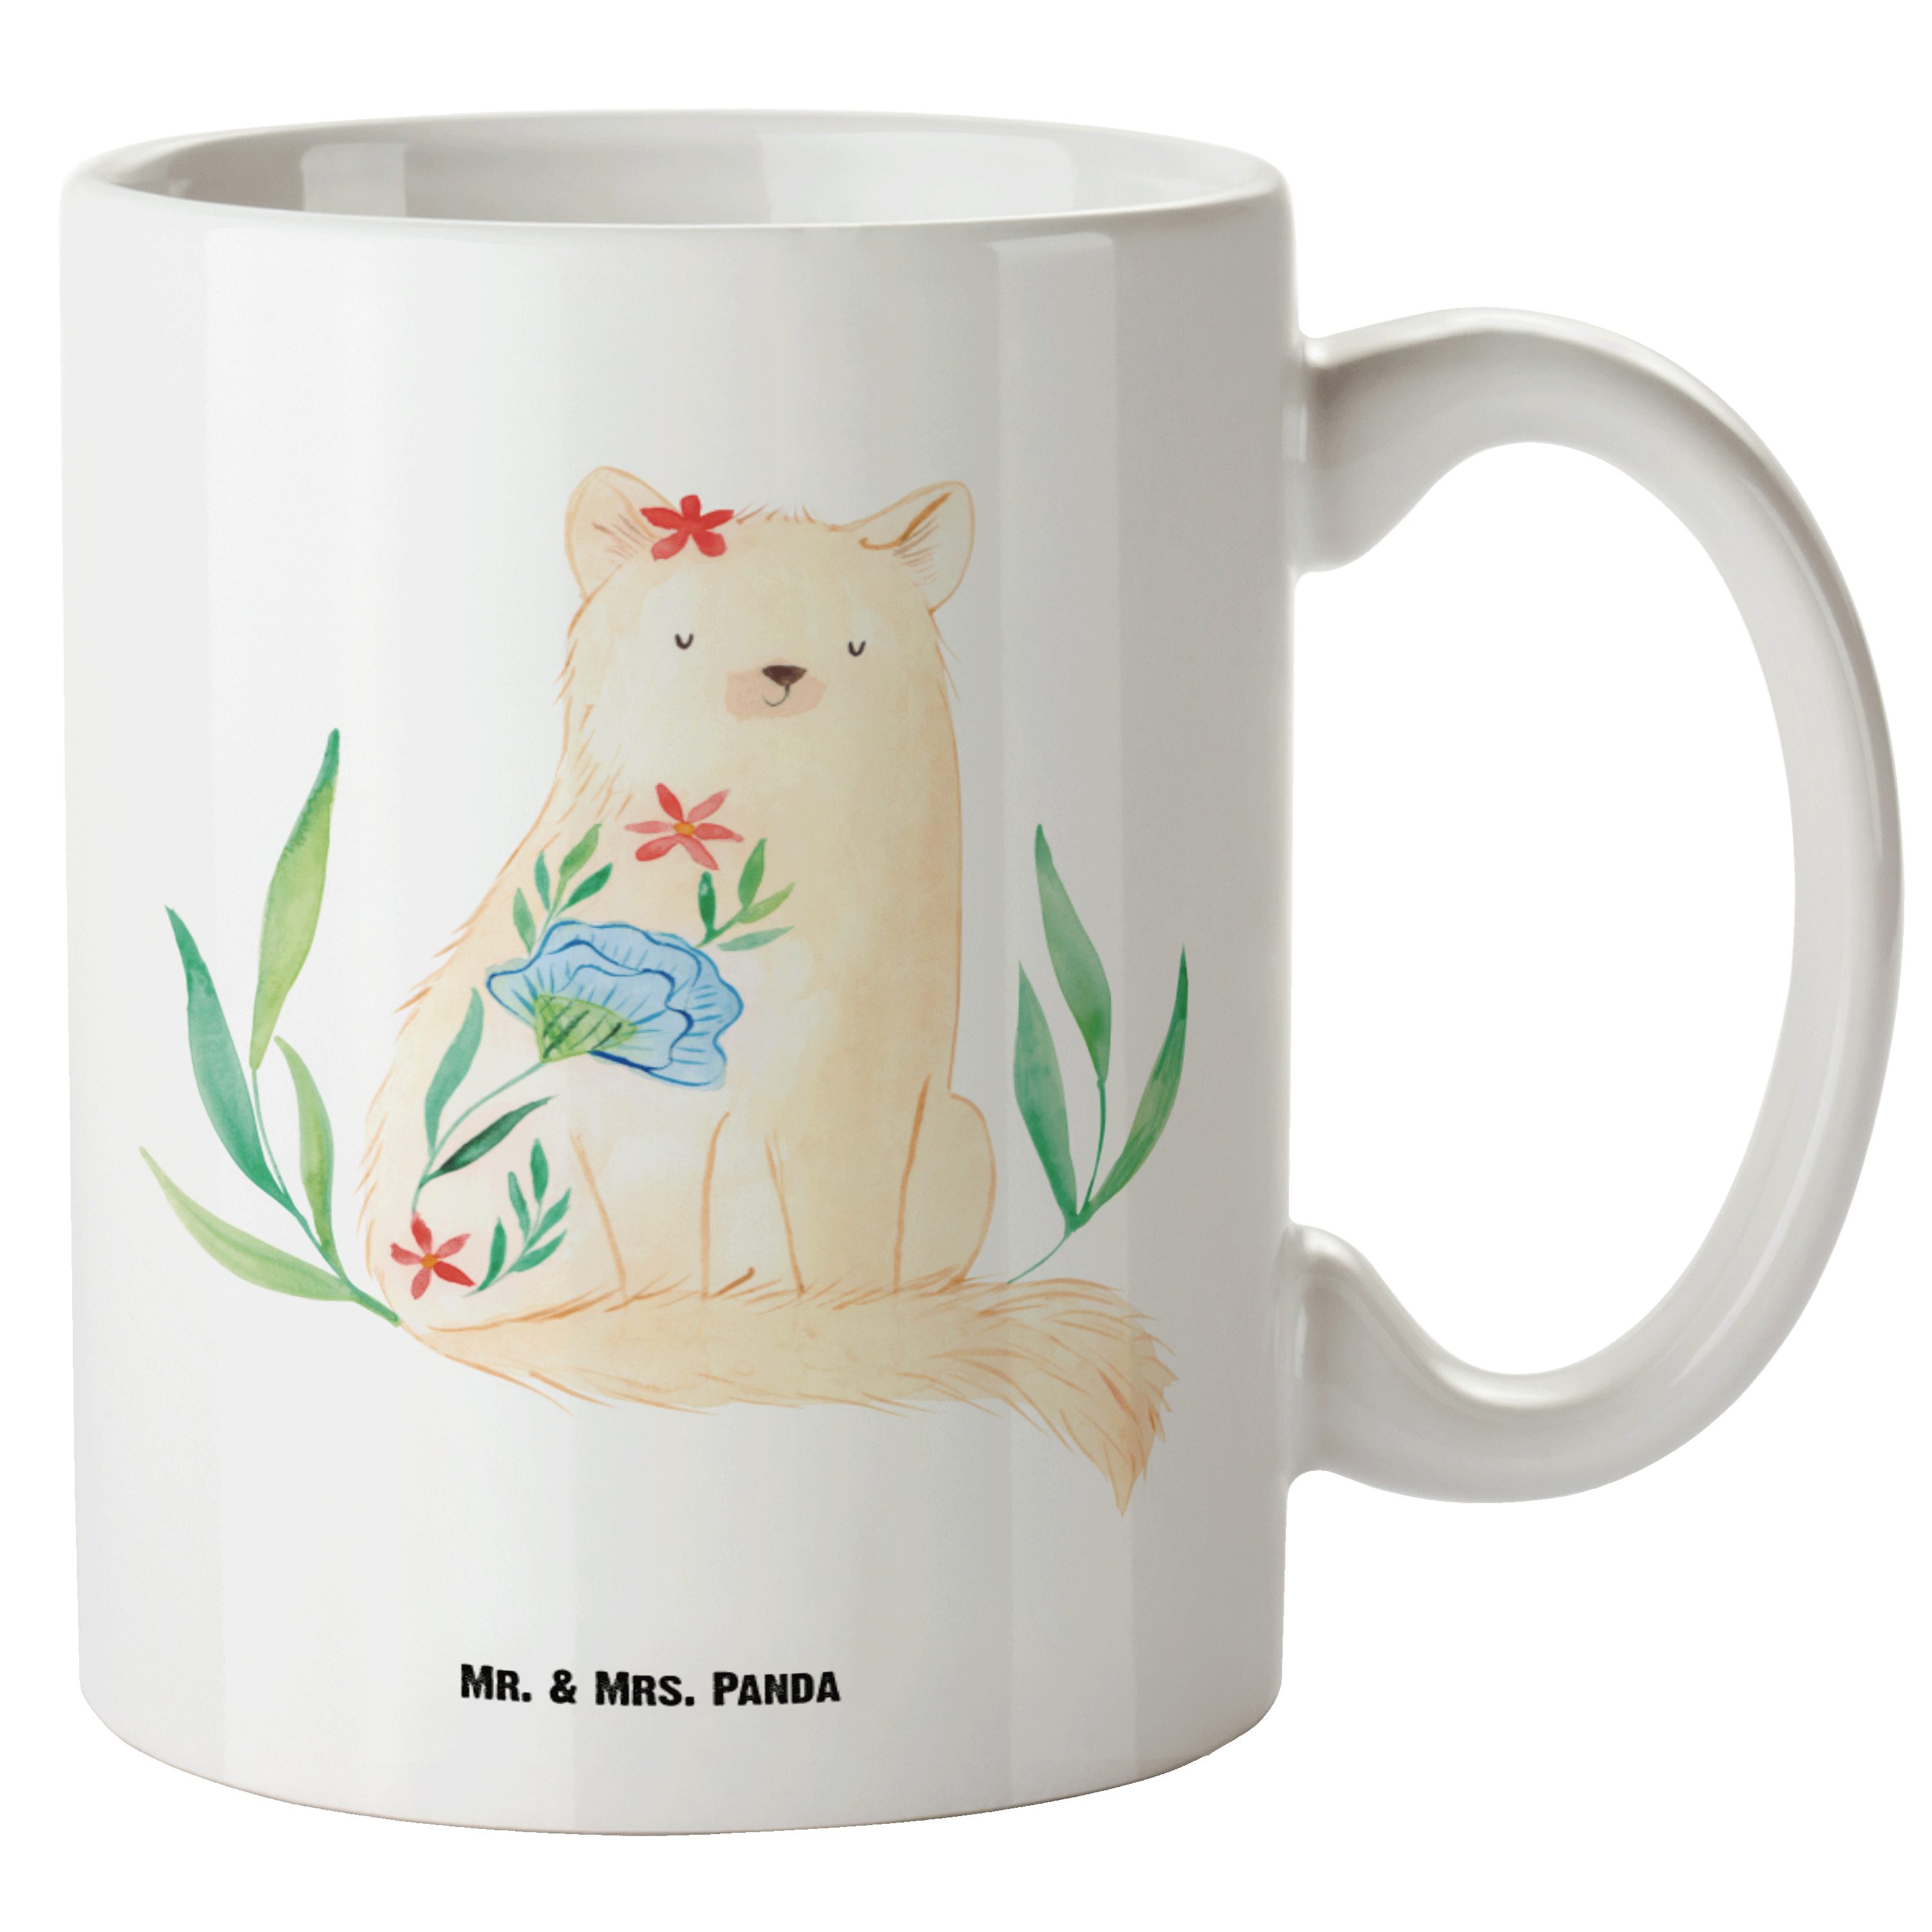 Mr. & Mrs. Panda Tasse Katze Blumen - Weiß - Geschenk, spülmaschinenfest, XL Becher, Groß, S, XL Tasse Keramik